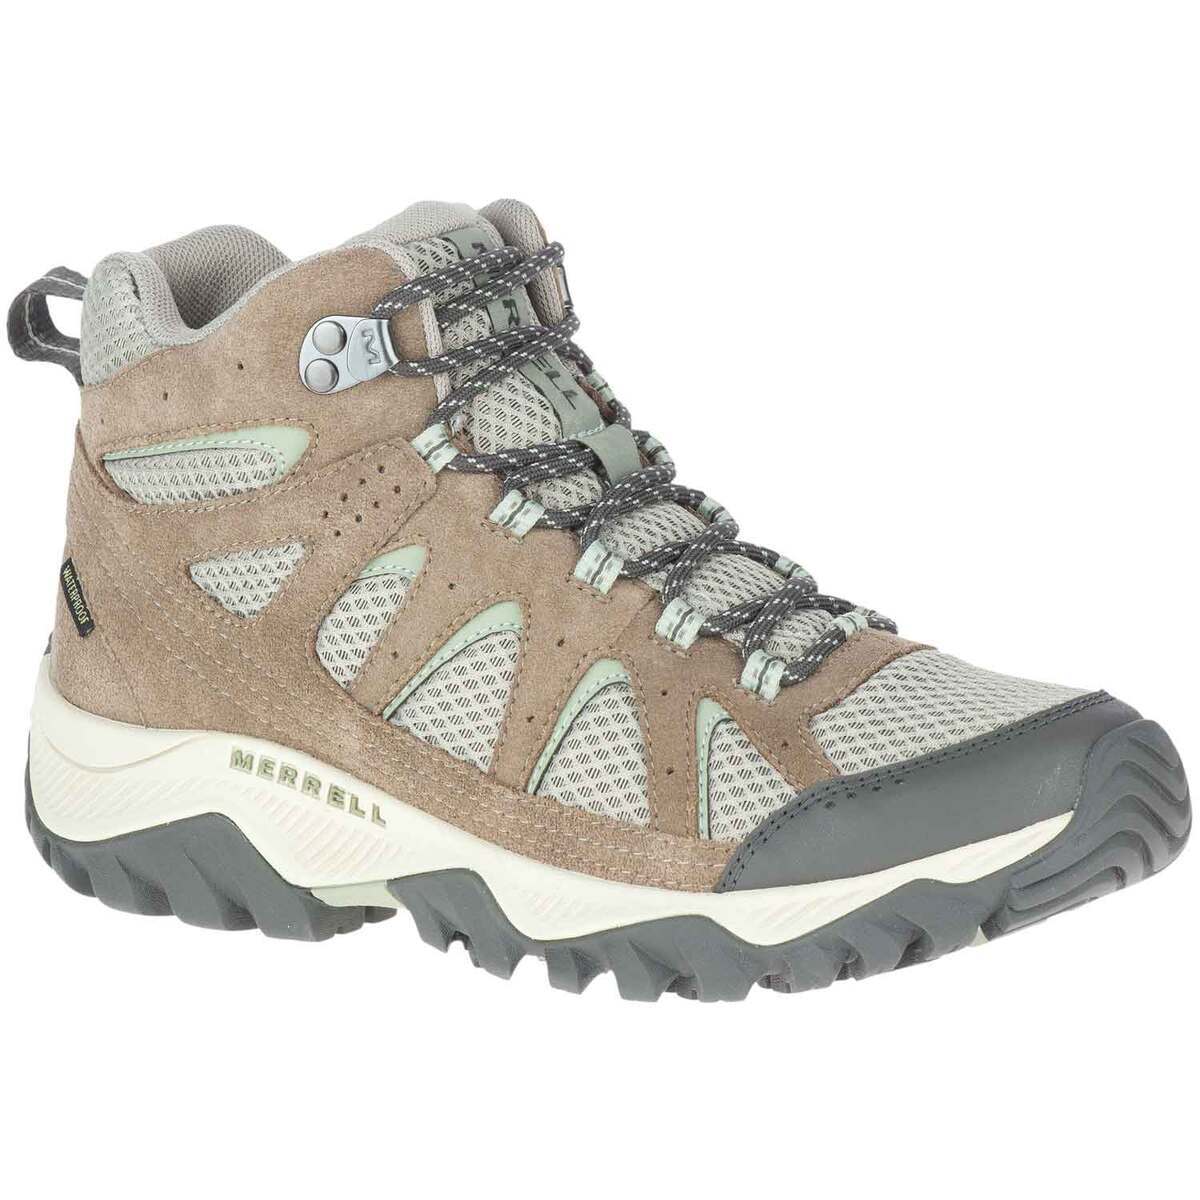 Grape Smitsom bringe handlingen Merrell Women's Oakcreek Waterproof Mid Hiking Boots | Sportsman's Warehouse